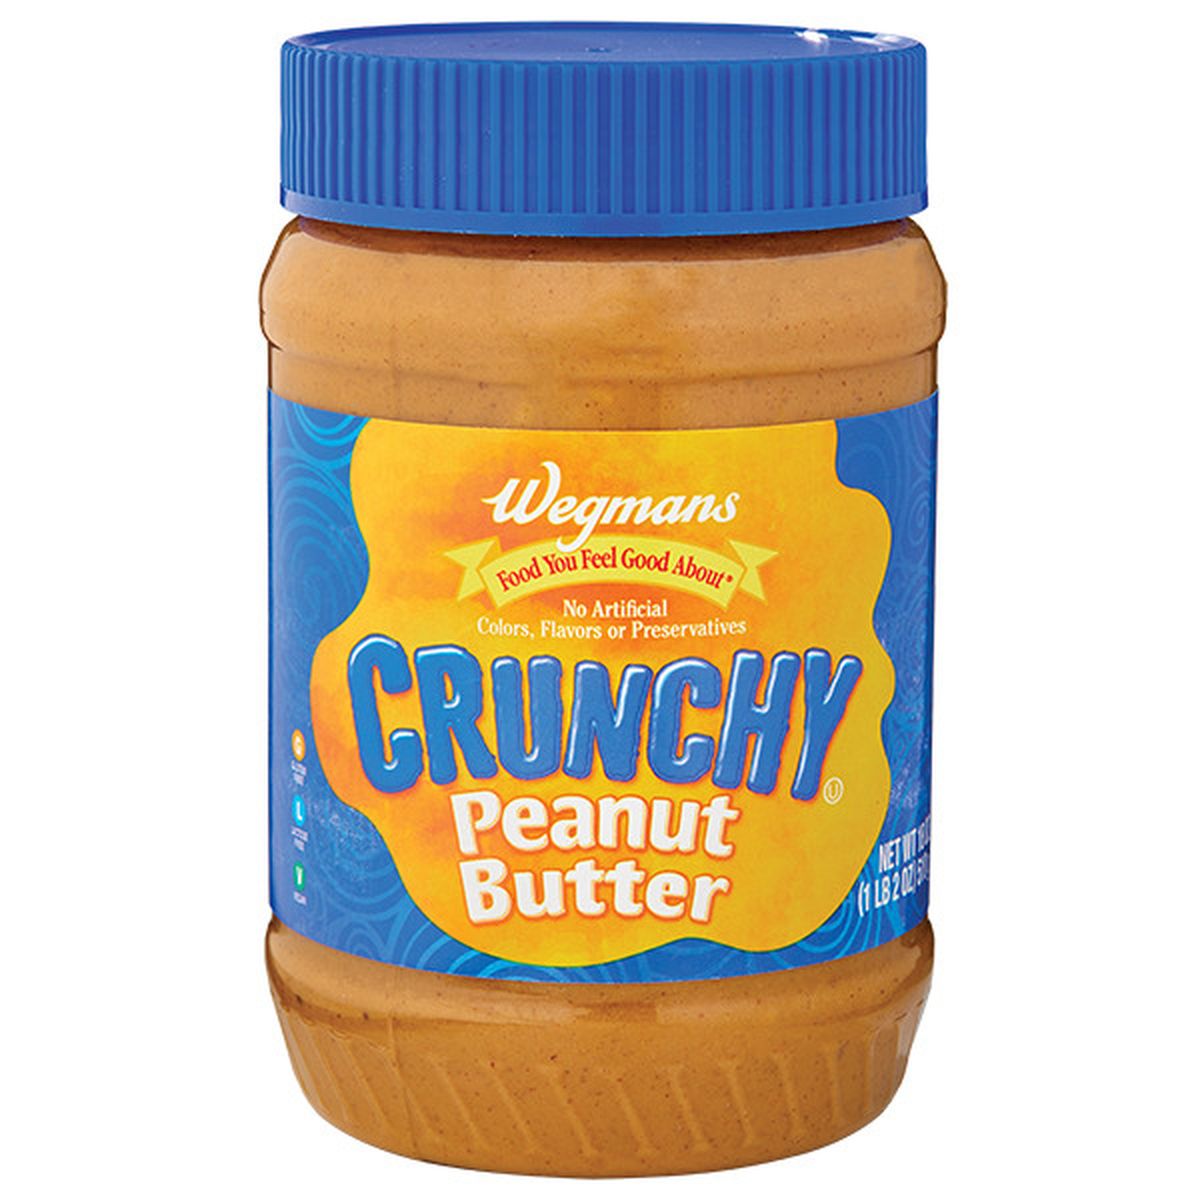 Calories in Wegmans Crunchy Peanut Butter